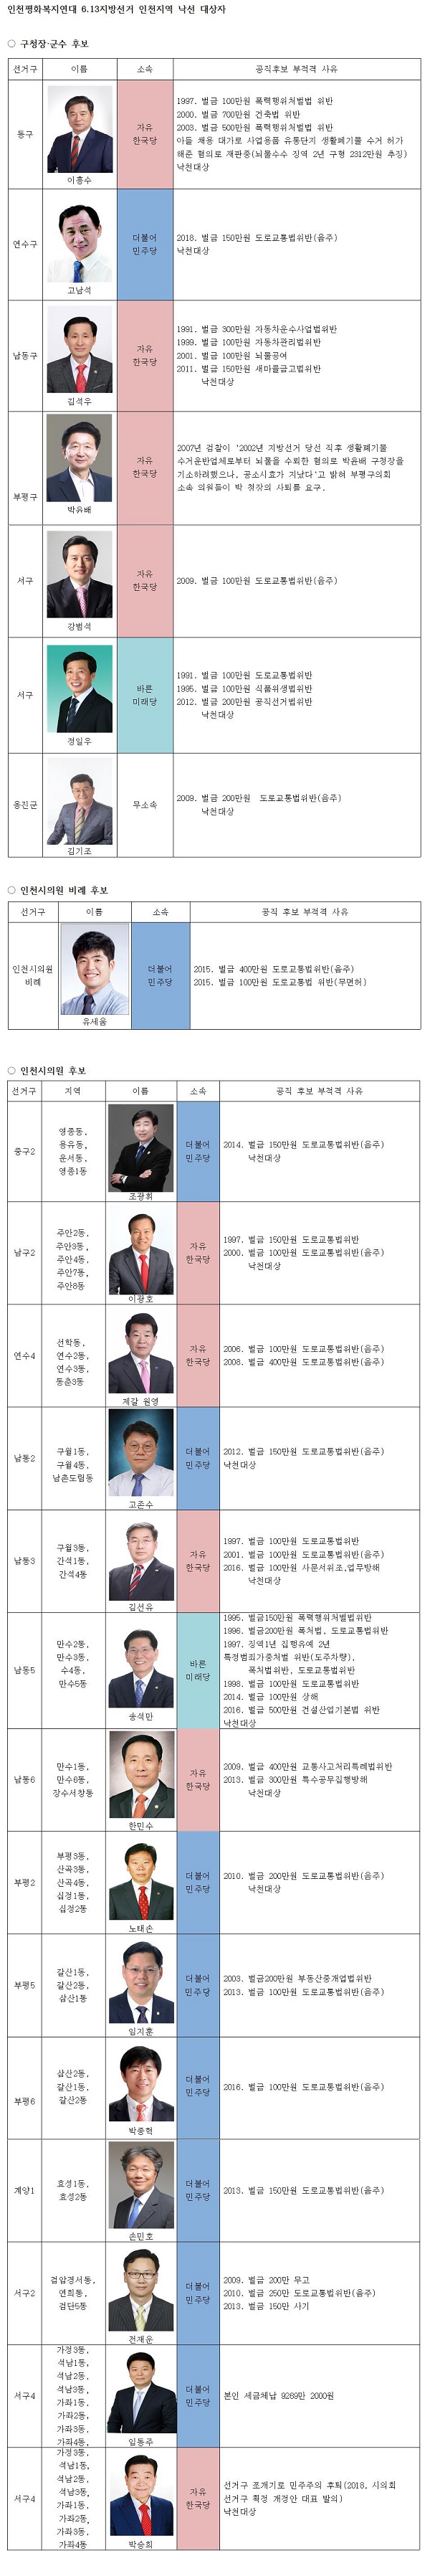 6.13 지방선거 인천지역 낙선대상 후보 